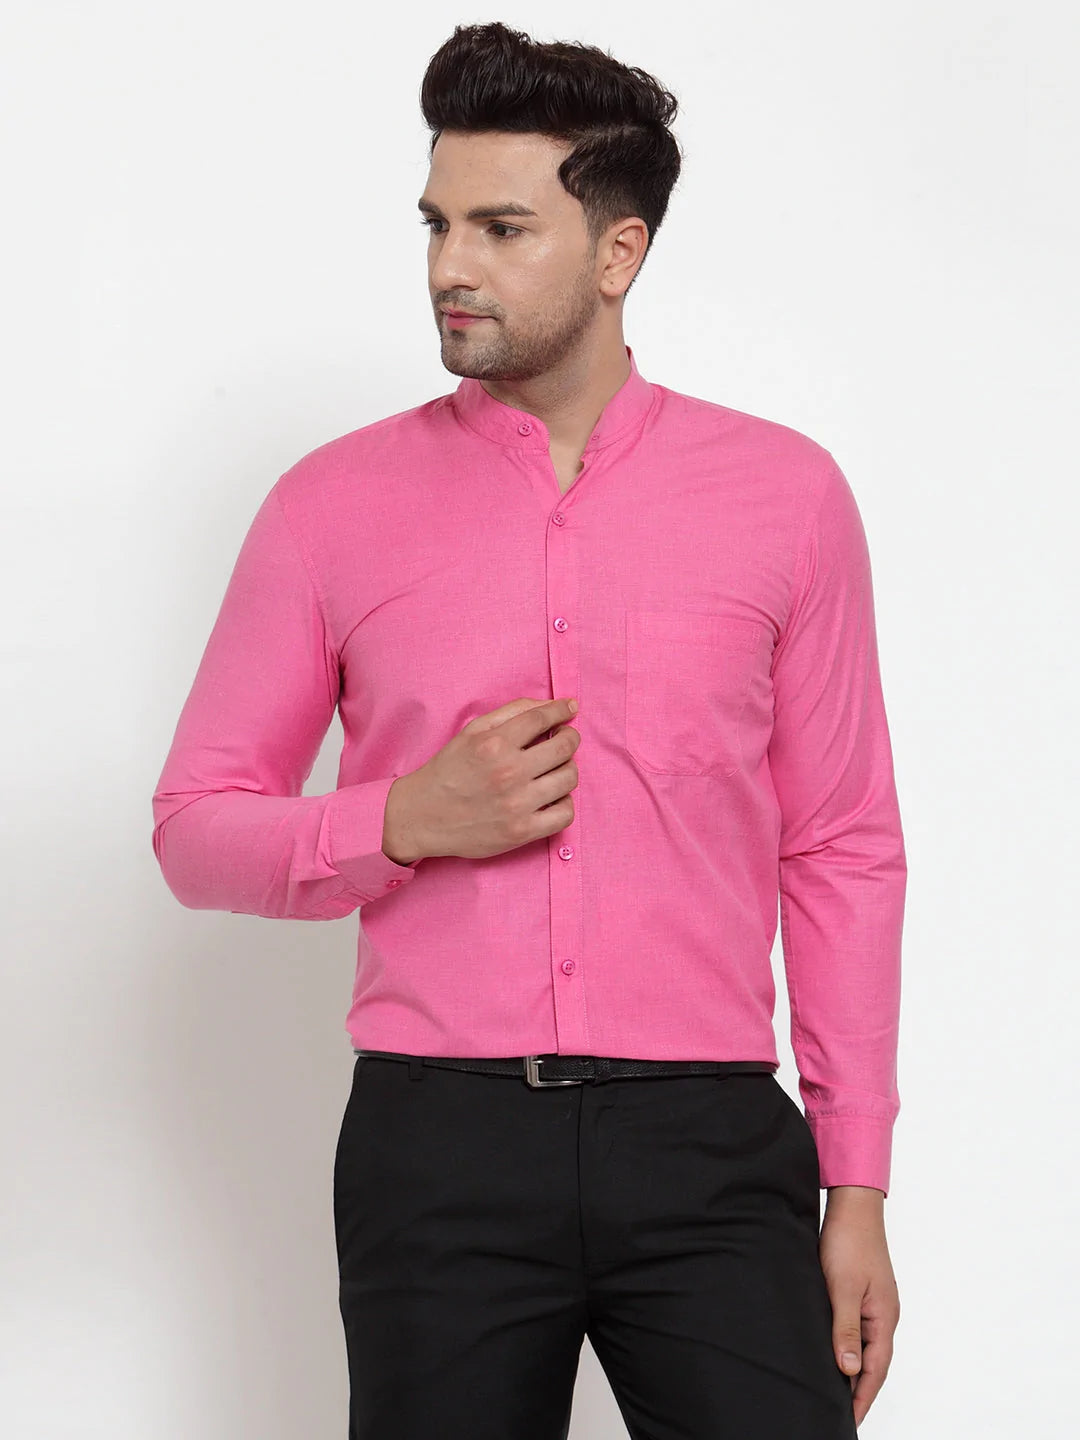 Jainish Pink Men's Cotton Solid Mandarin Collar Formal Shirts ( SF 757Pink )